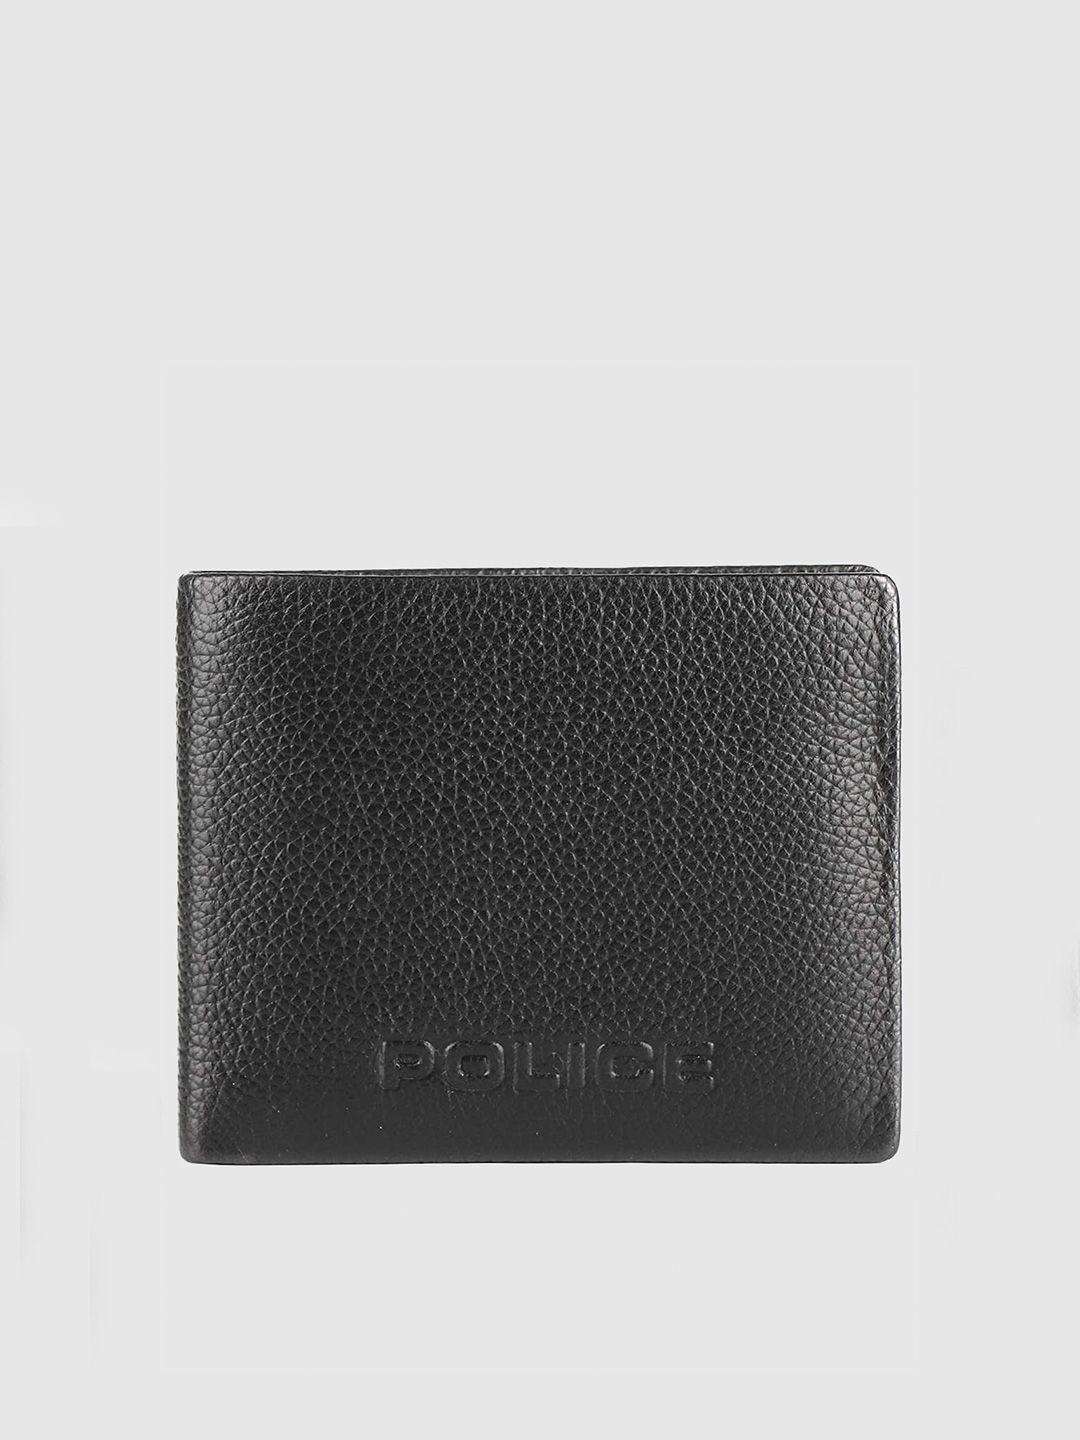 police men black solid leather wallet